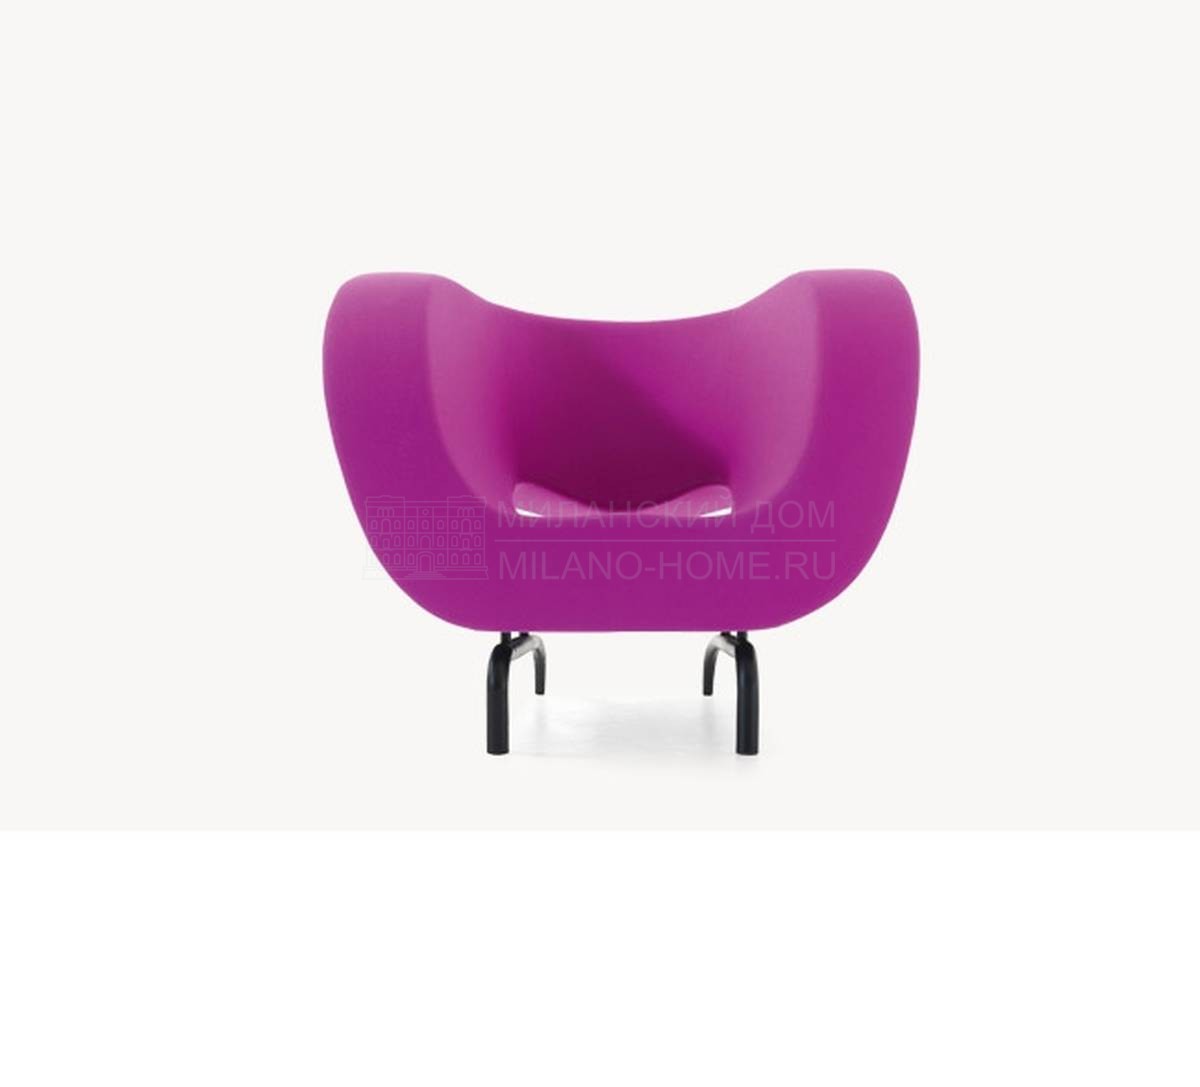 Круглое кресло VA0001 из Италии фабрики MOROSO